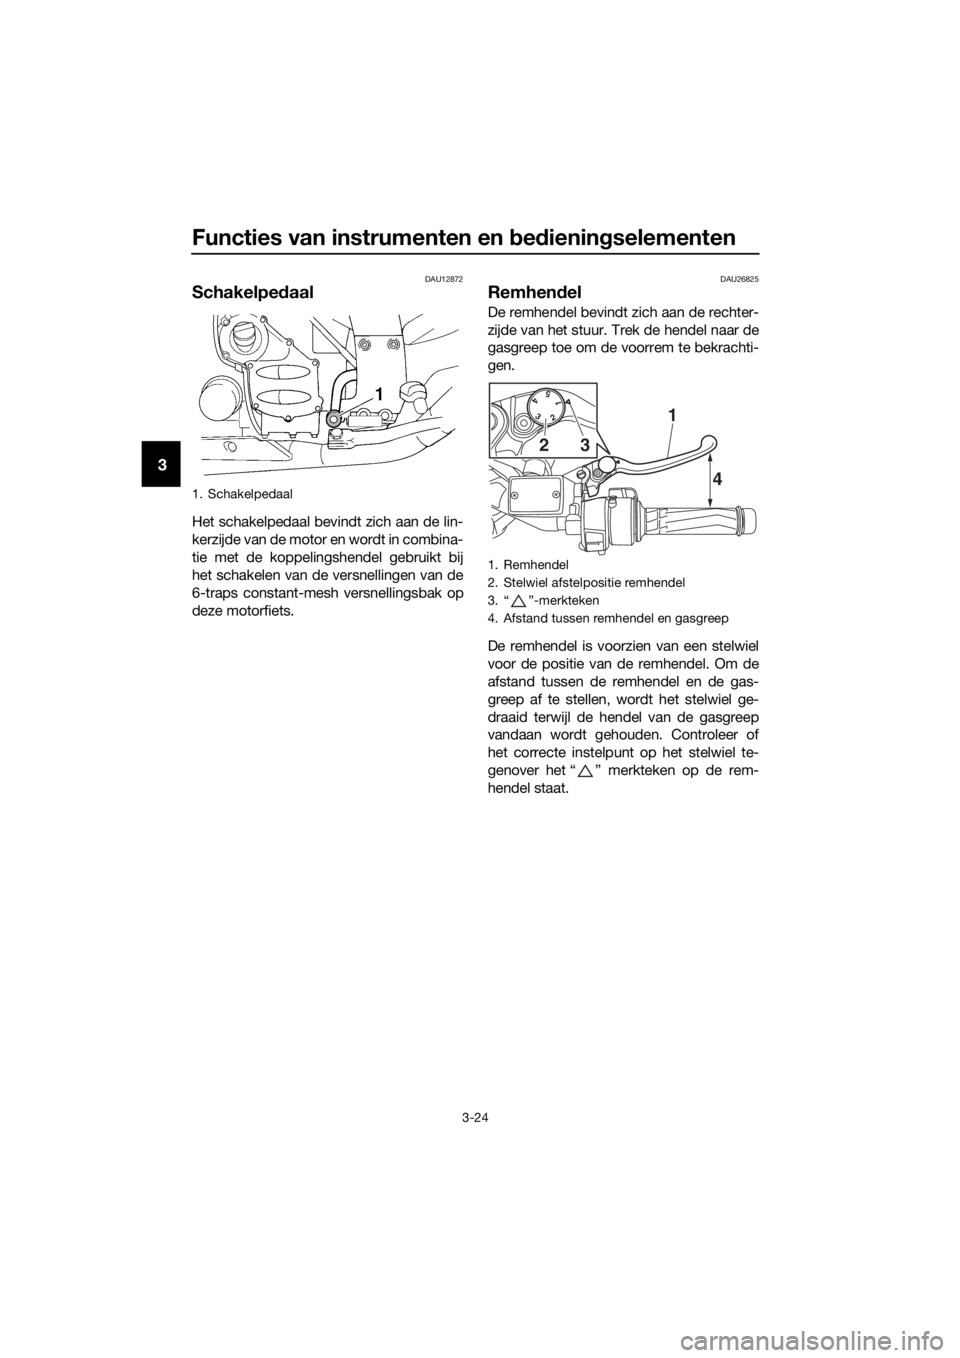 YAMAHA FJR1300A 2018  Instructieboekje (in Dutch) Functies van instrumenten en bed iening selementen
3-24
3
DAU12872
Schakelpe daal
Het schakelpedaal bevindt zich aan de lin-
kerzijde van de motor en wordt in combina-
tie met de koppelingshendel gebr